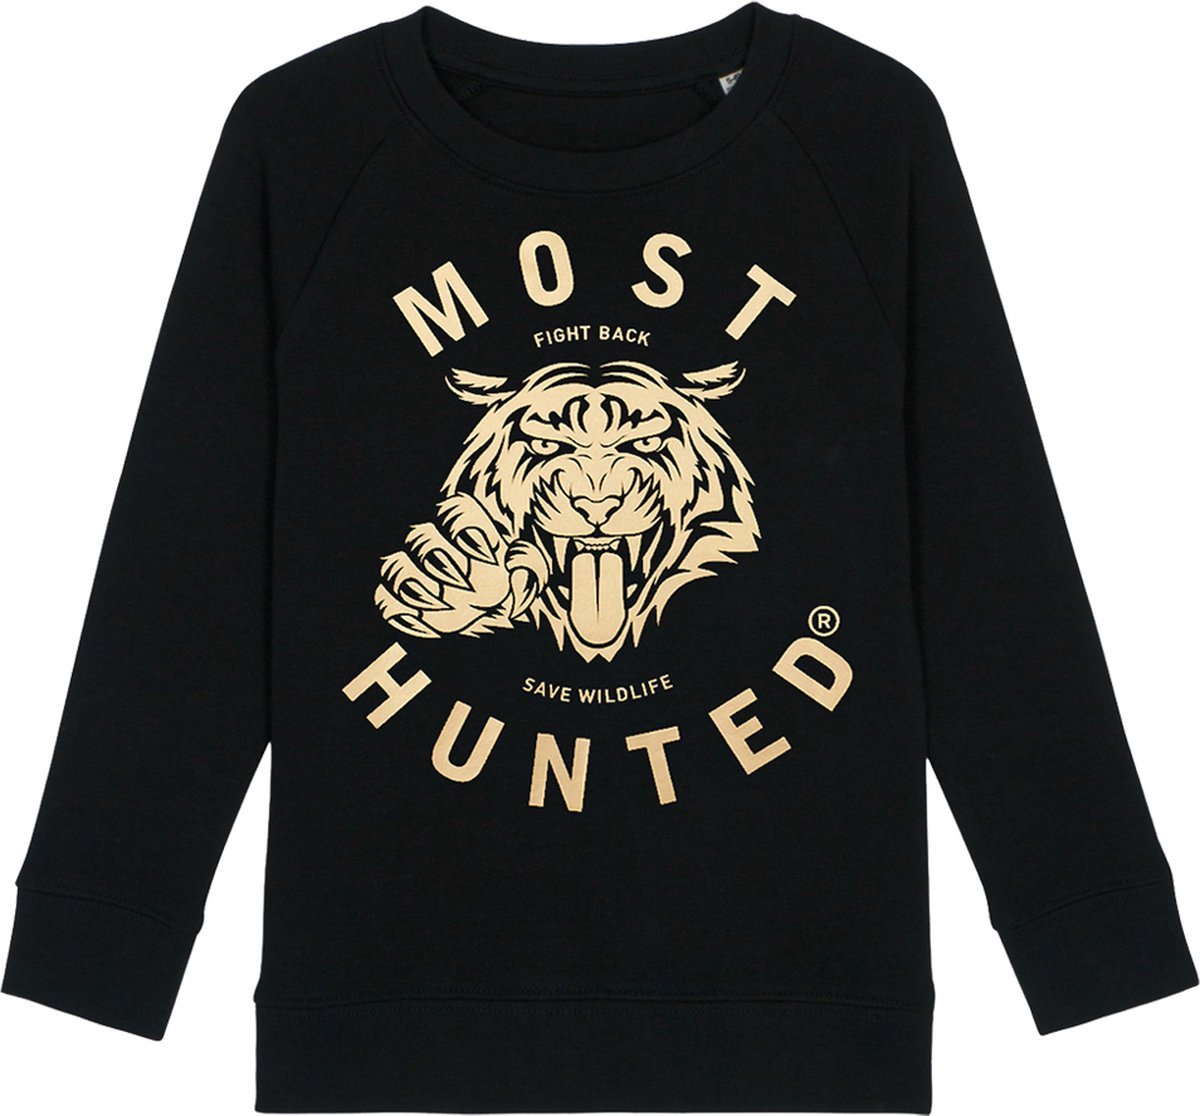 Most Hunted - kinder sweater - tijger - zwart - goud - maat 98/104